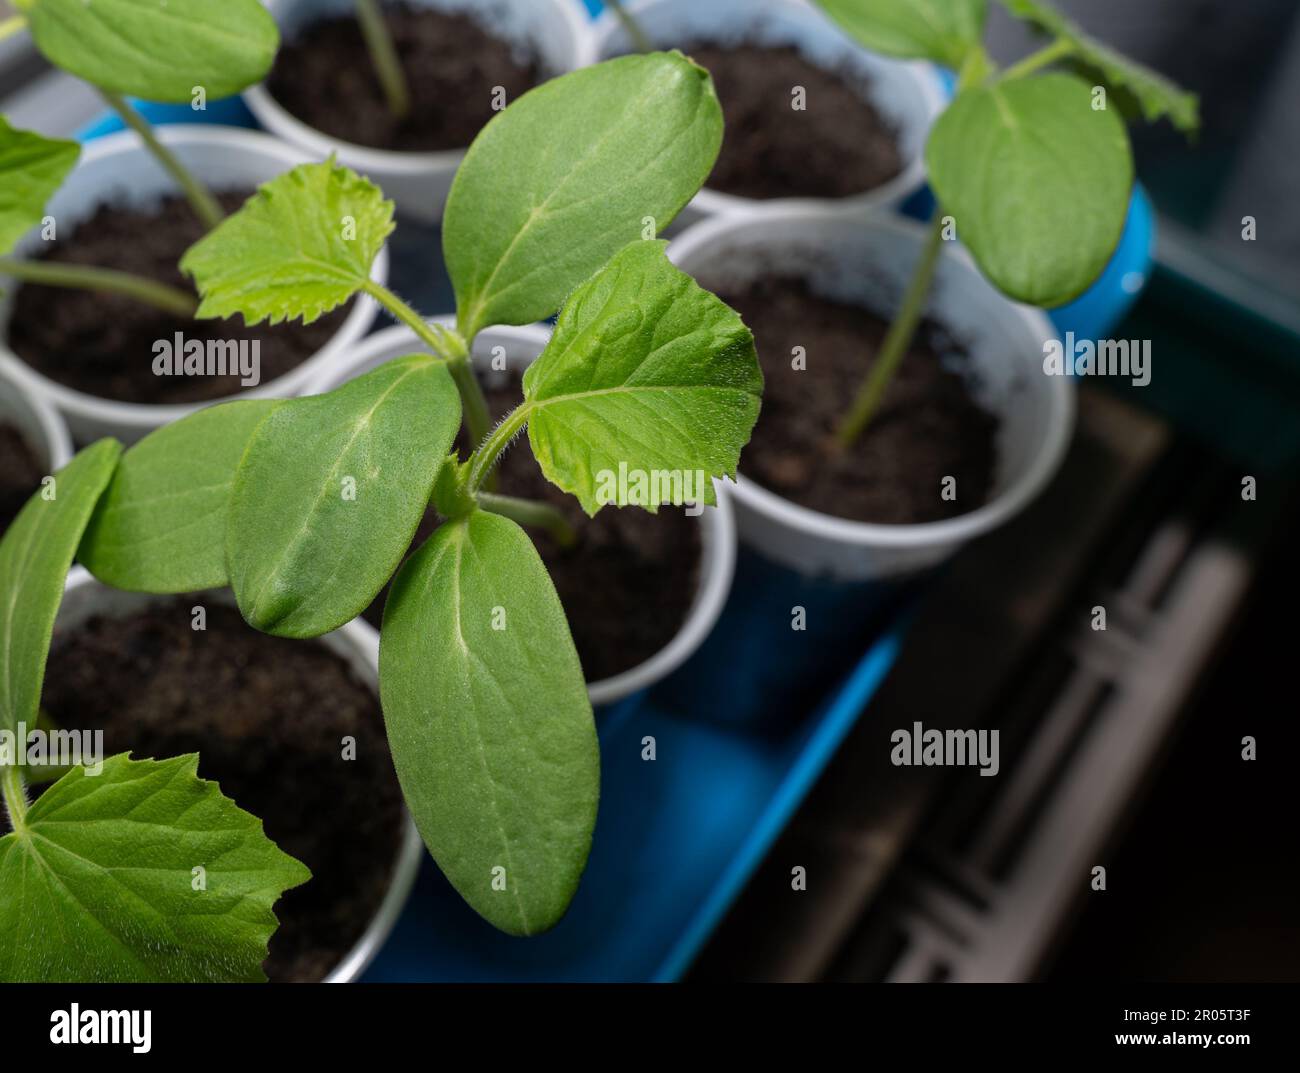 Piantine di cetrioli in tazze mentre crescono sul davanzale Foto Stock